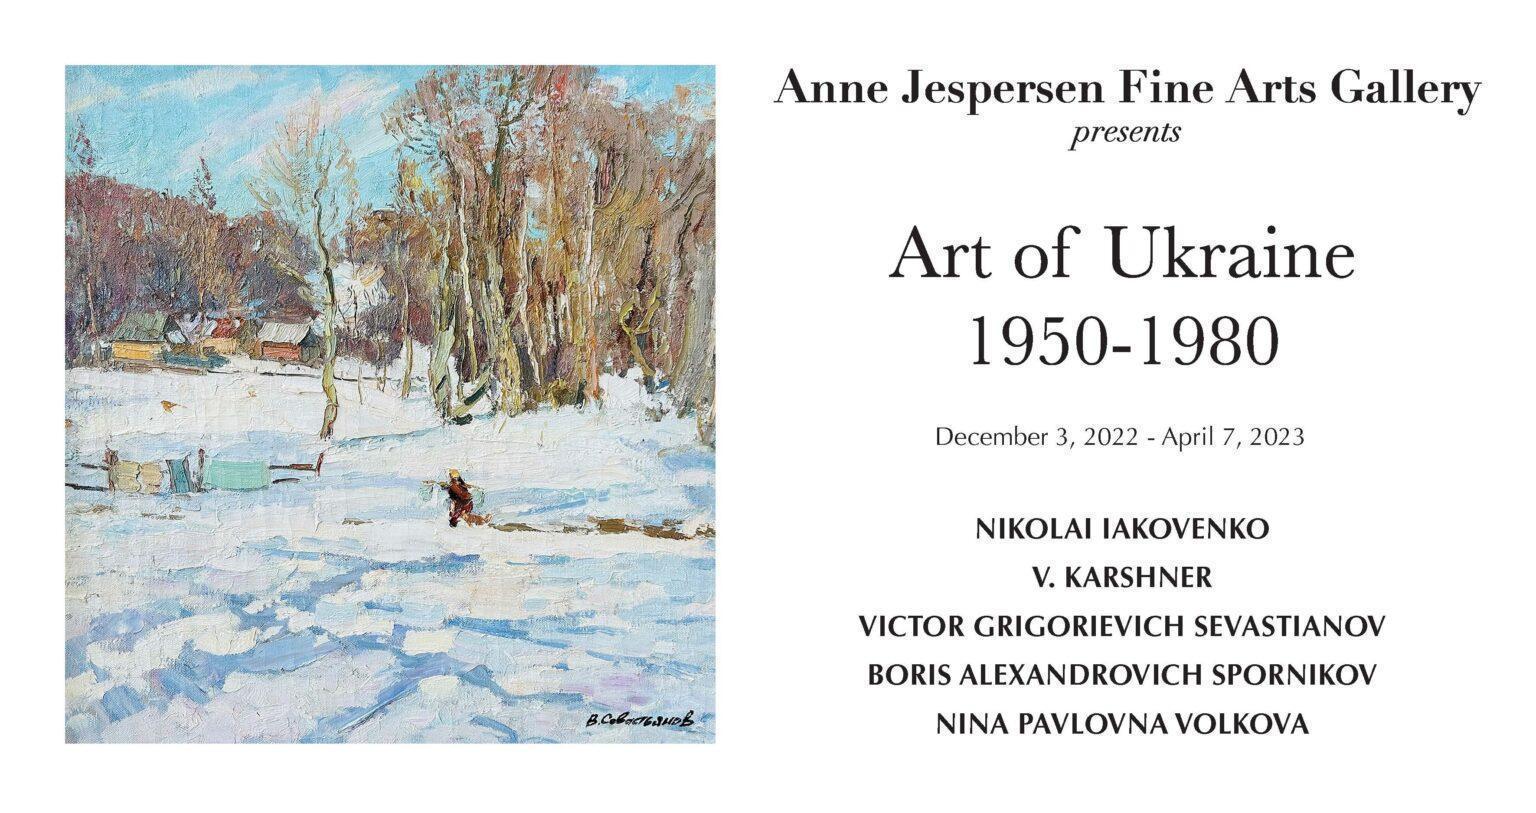  “Art of Ukraine” Exhibition Coming to Helper 